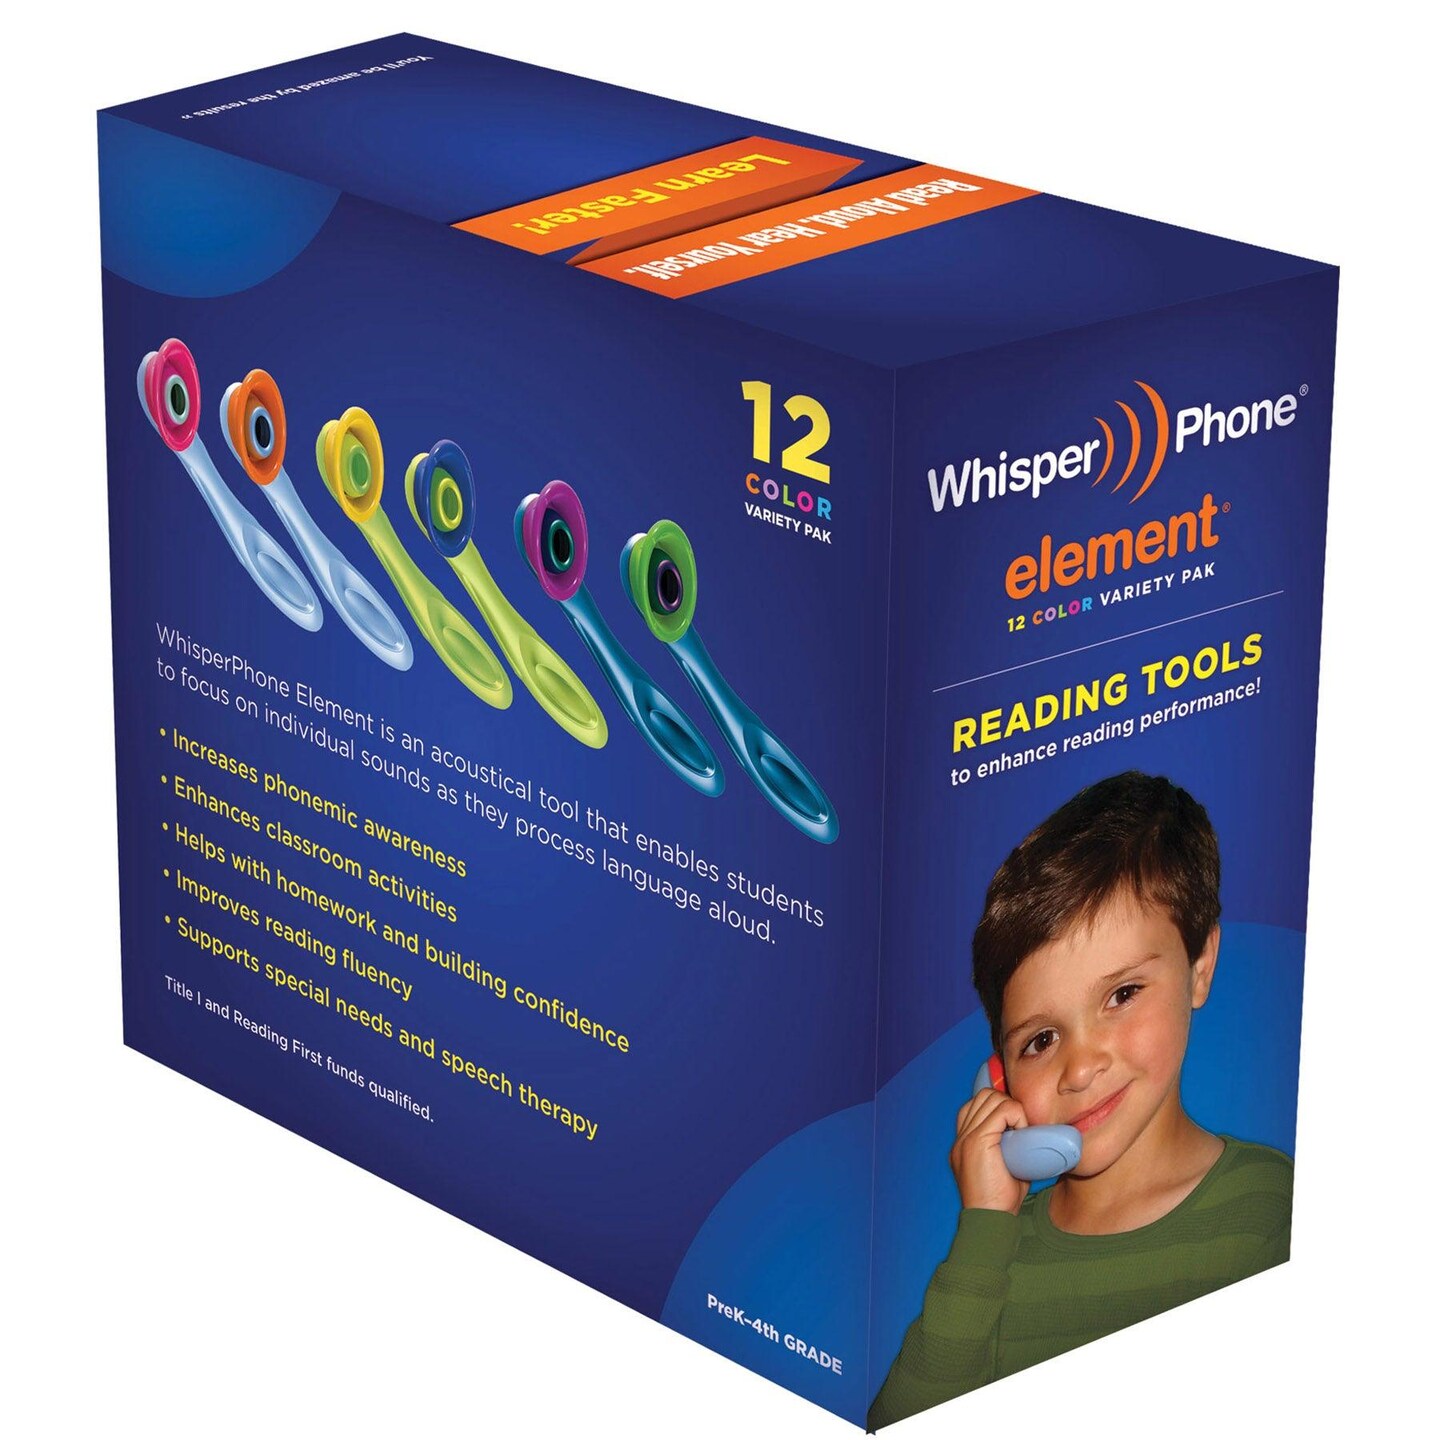 WhisperPhone&#xAE; VarietyPak of 12